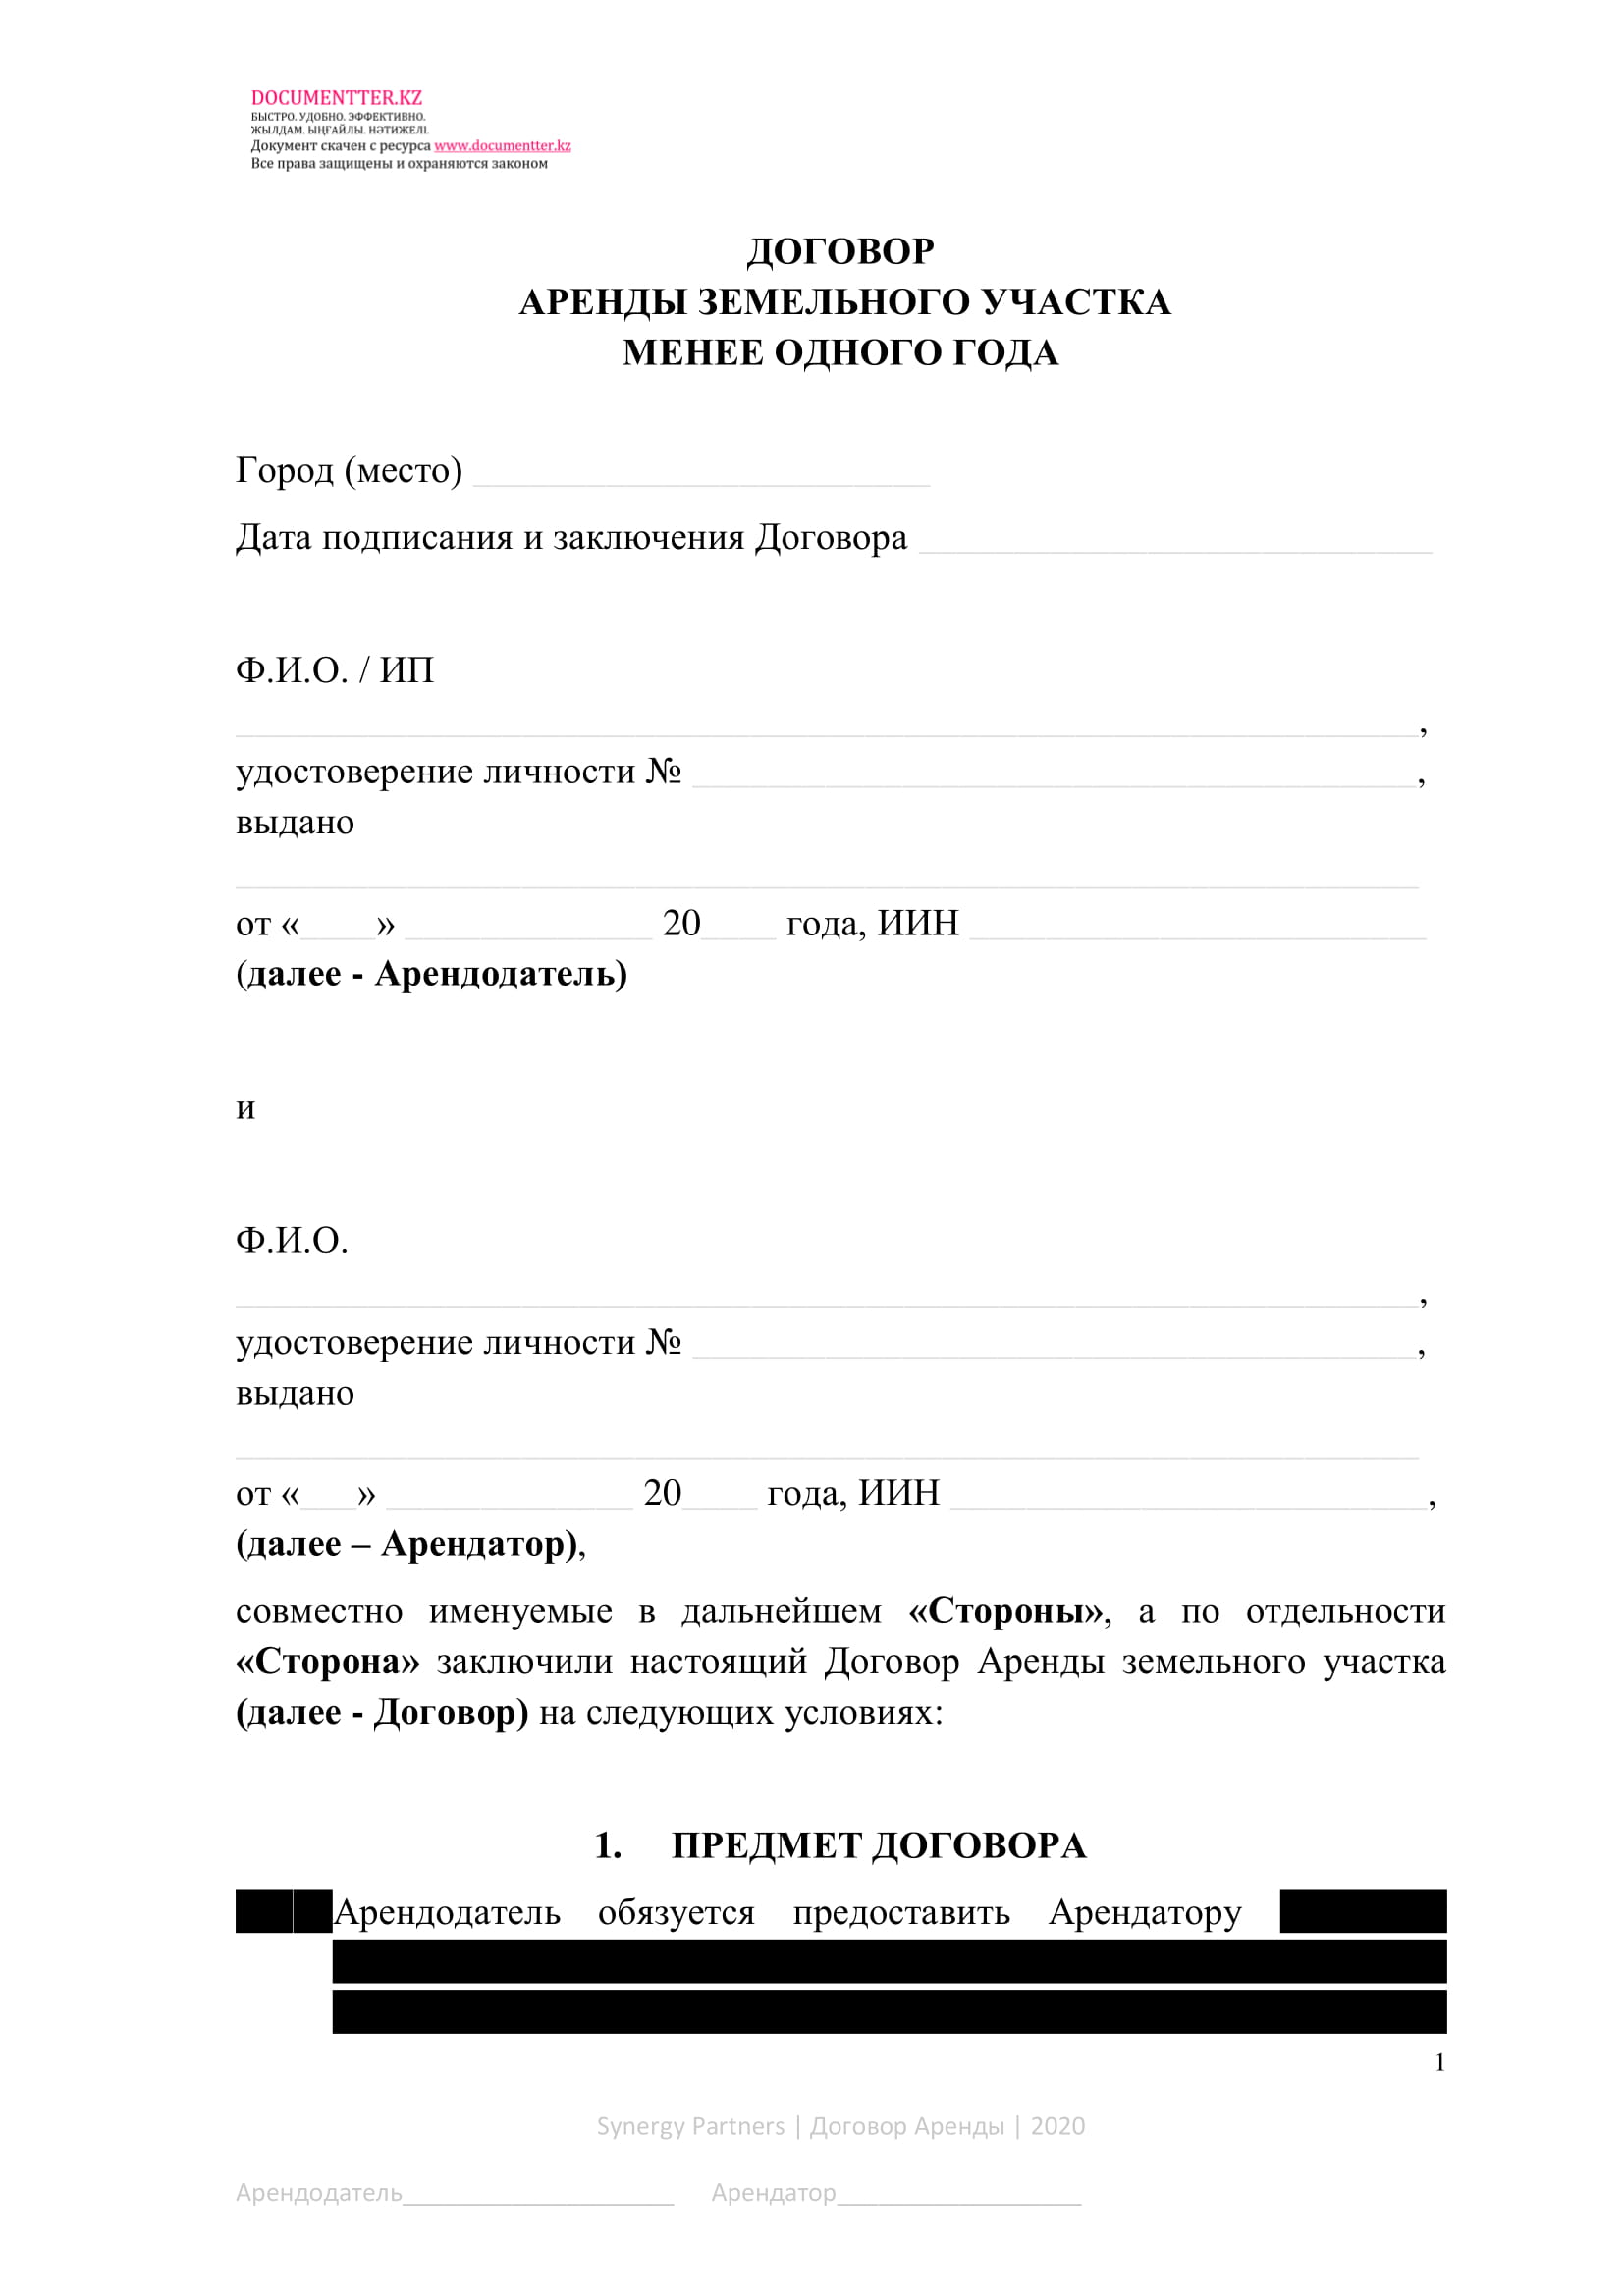 Договор аренды земельного участка  | documentter.kz в Казахстане 